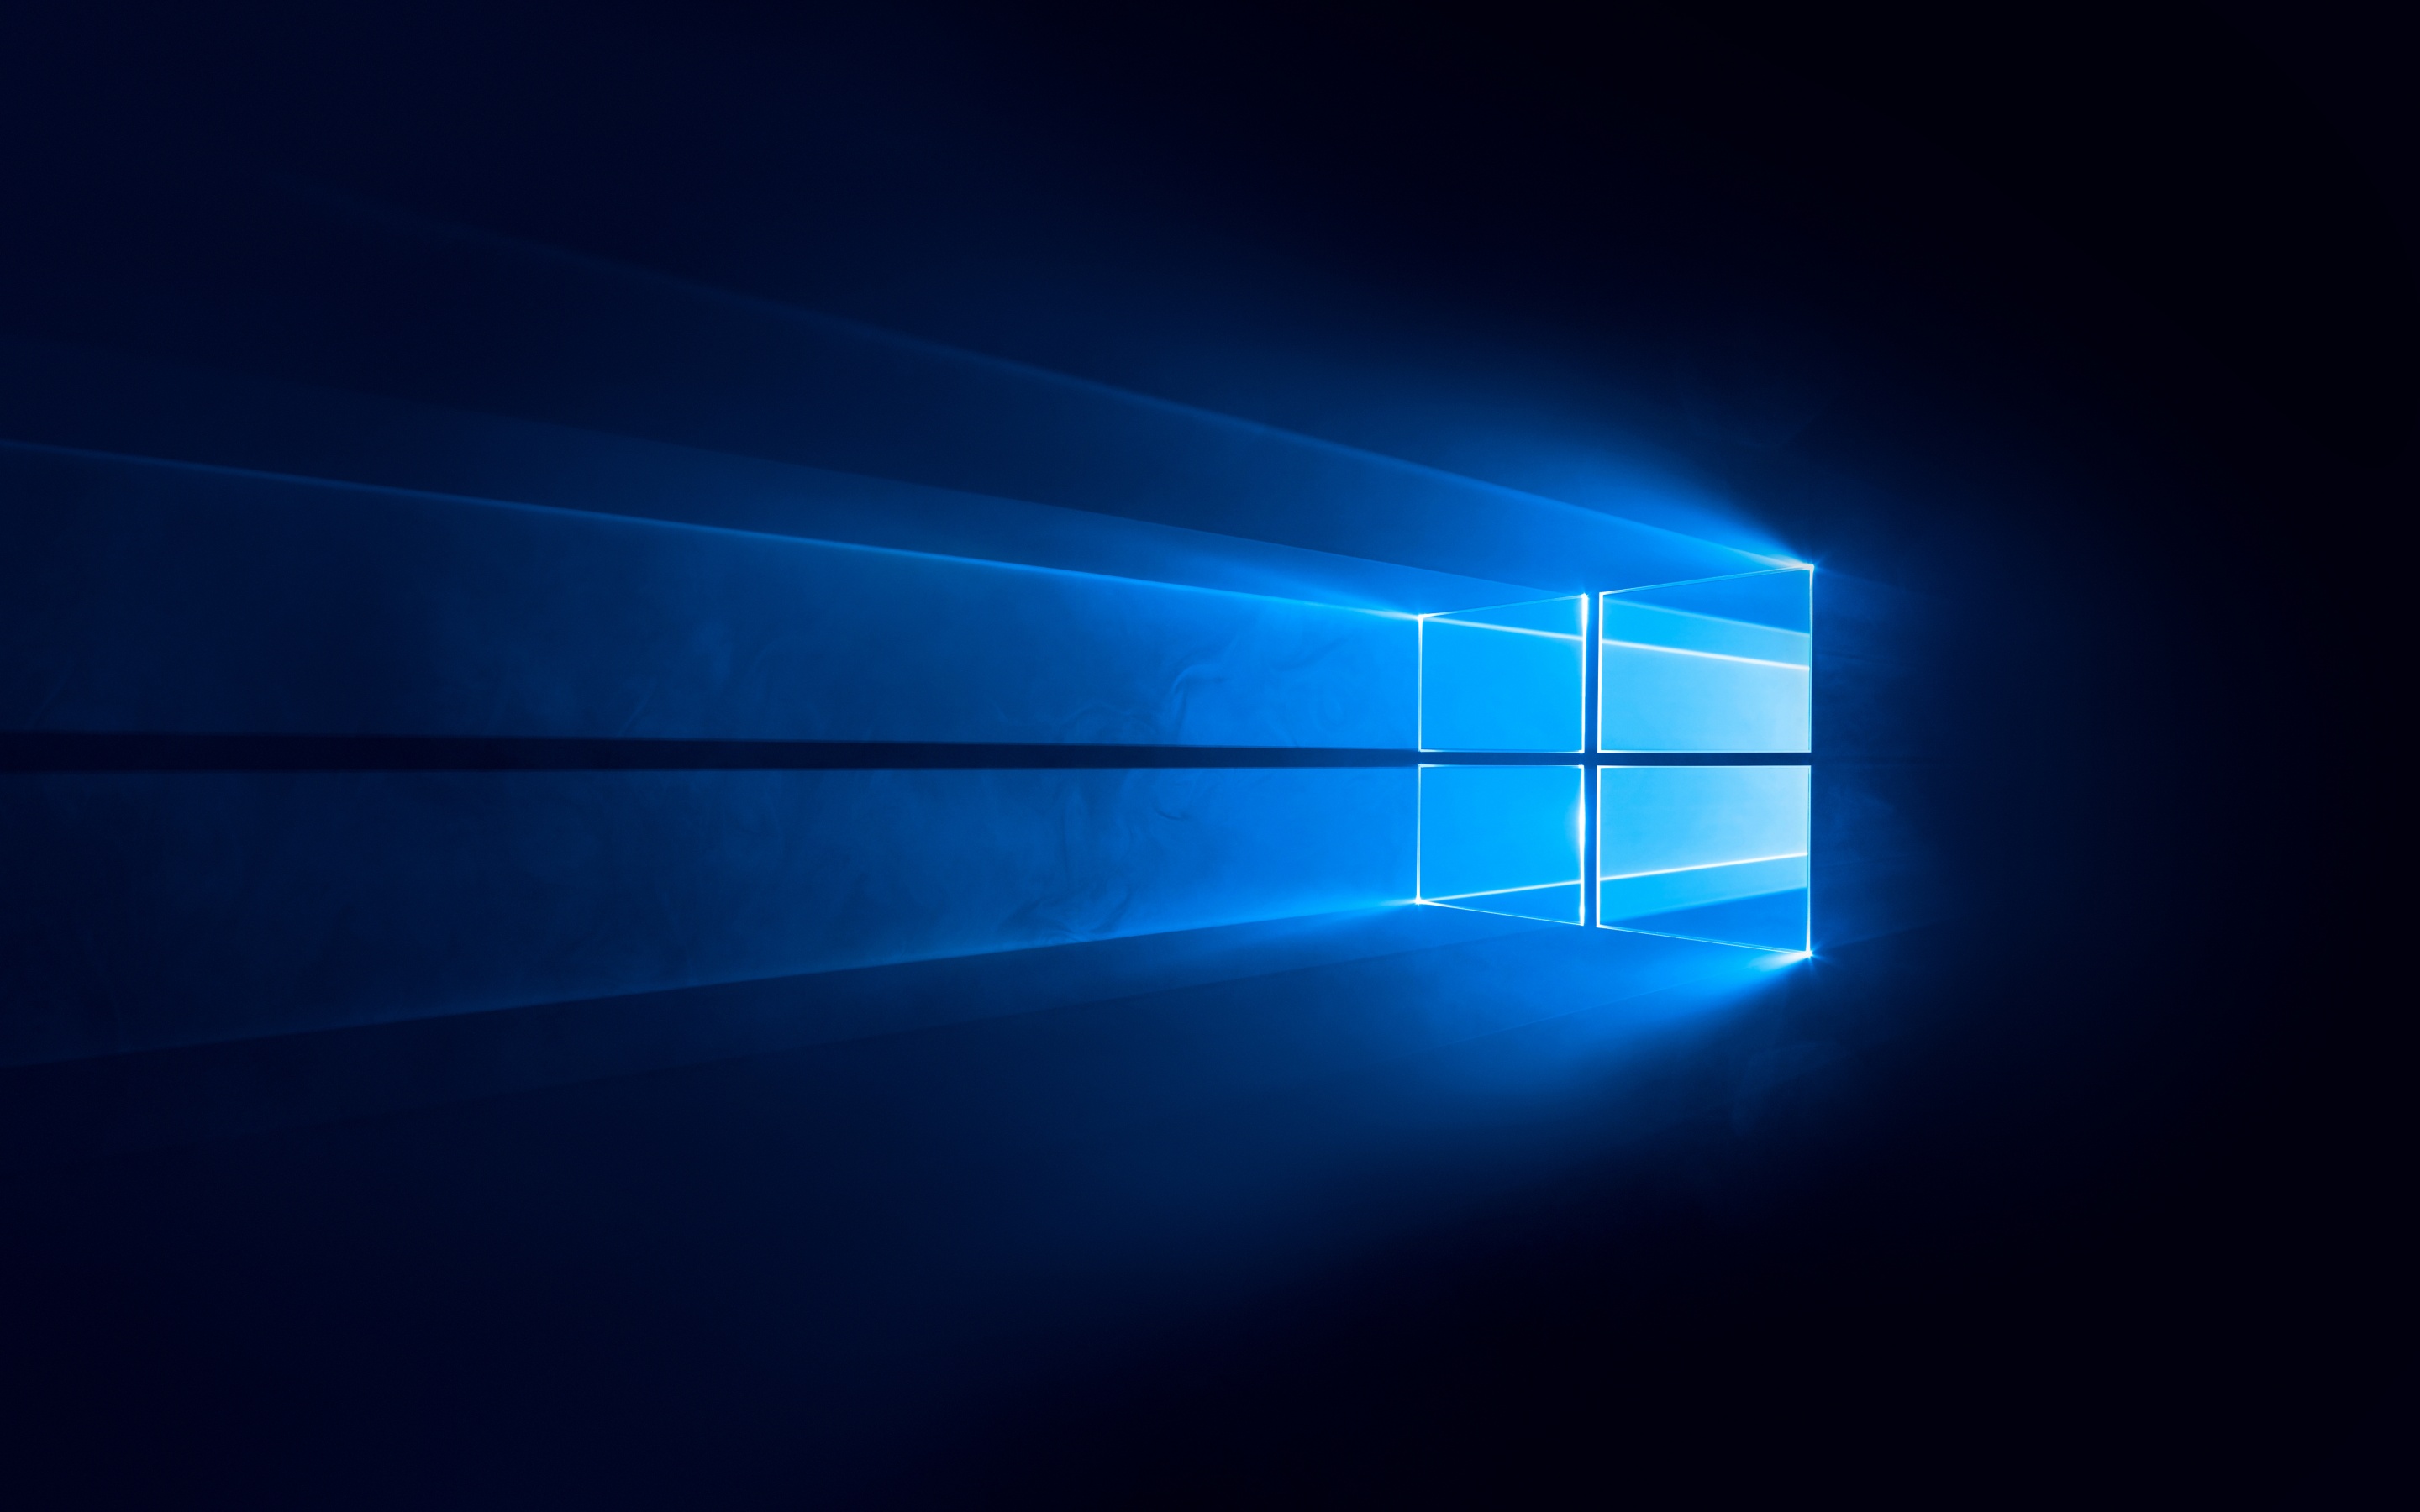 Trở nên tinh tế và đẳng cấp hơn với hình nền đen kỹ thuật số, nền xanh dương, công nghệ Windows 10 4K. Với chất lượng hình ảnh tuyệt đỉnh, các chi tiết sắc nét và sự kết hợp tinh tế giữa màu đen và xanh dương, hình nền này chắc chắn sẽ mang đến trải nghiệm độc đáo cho người dùng.